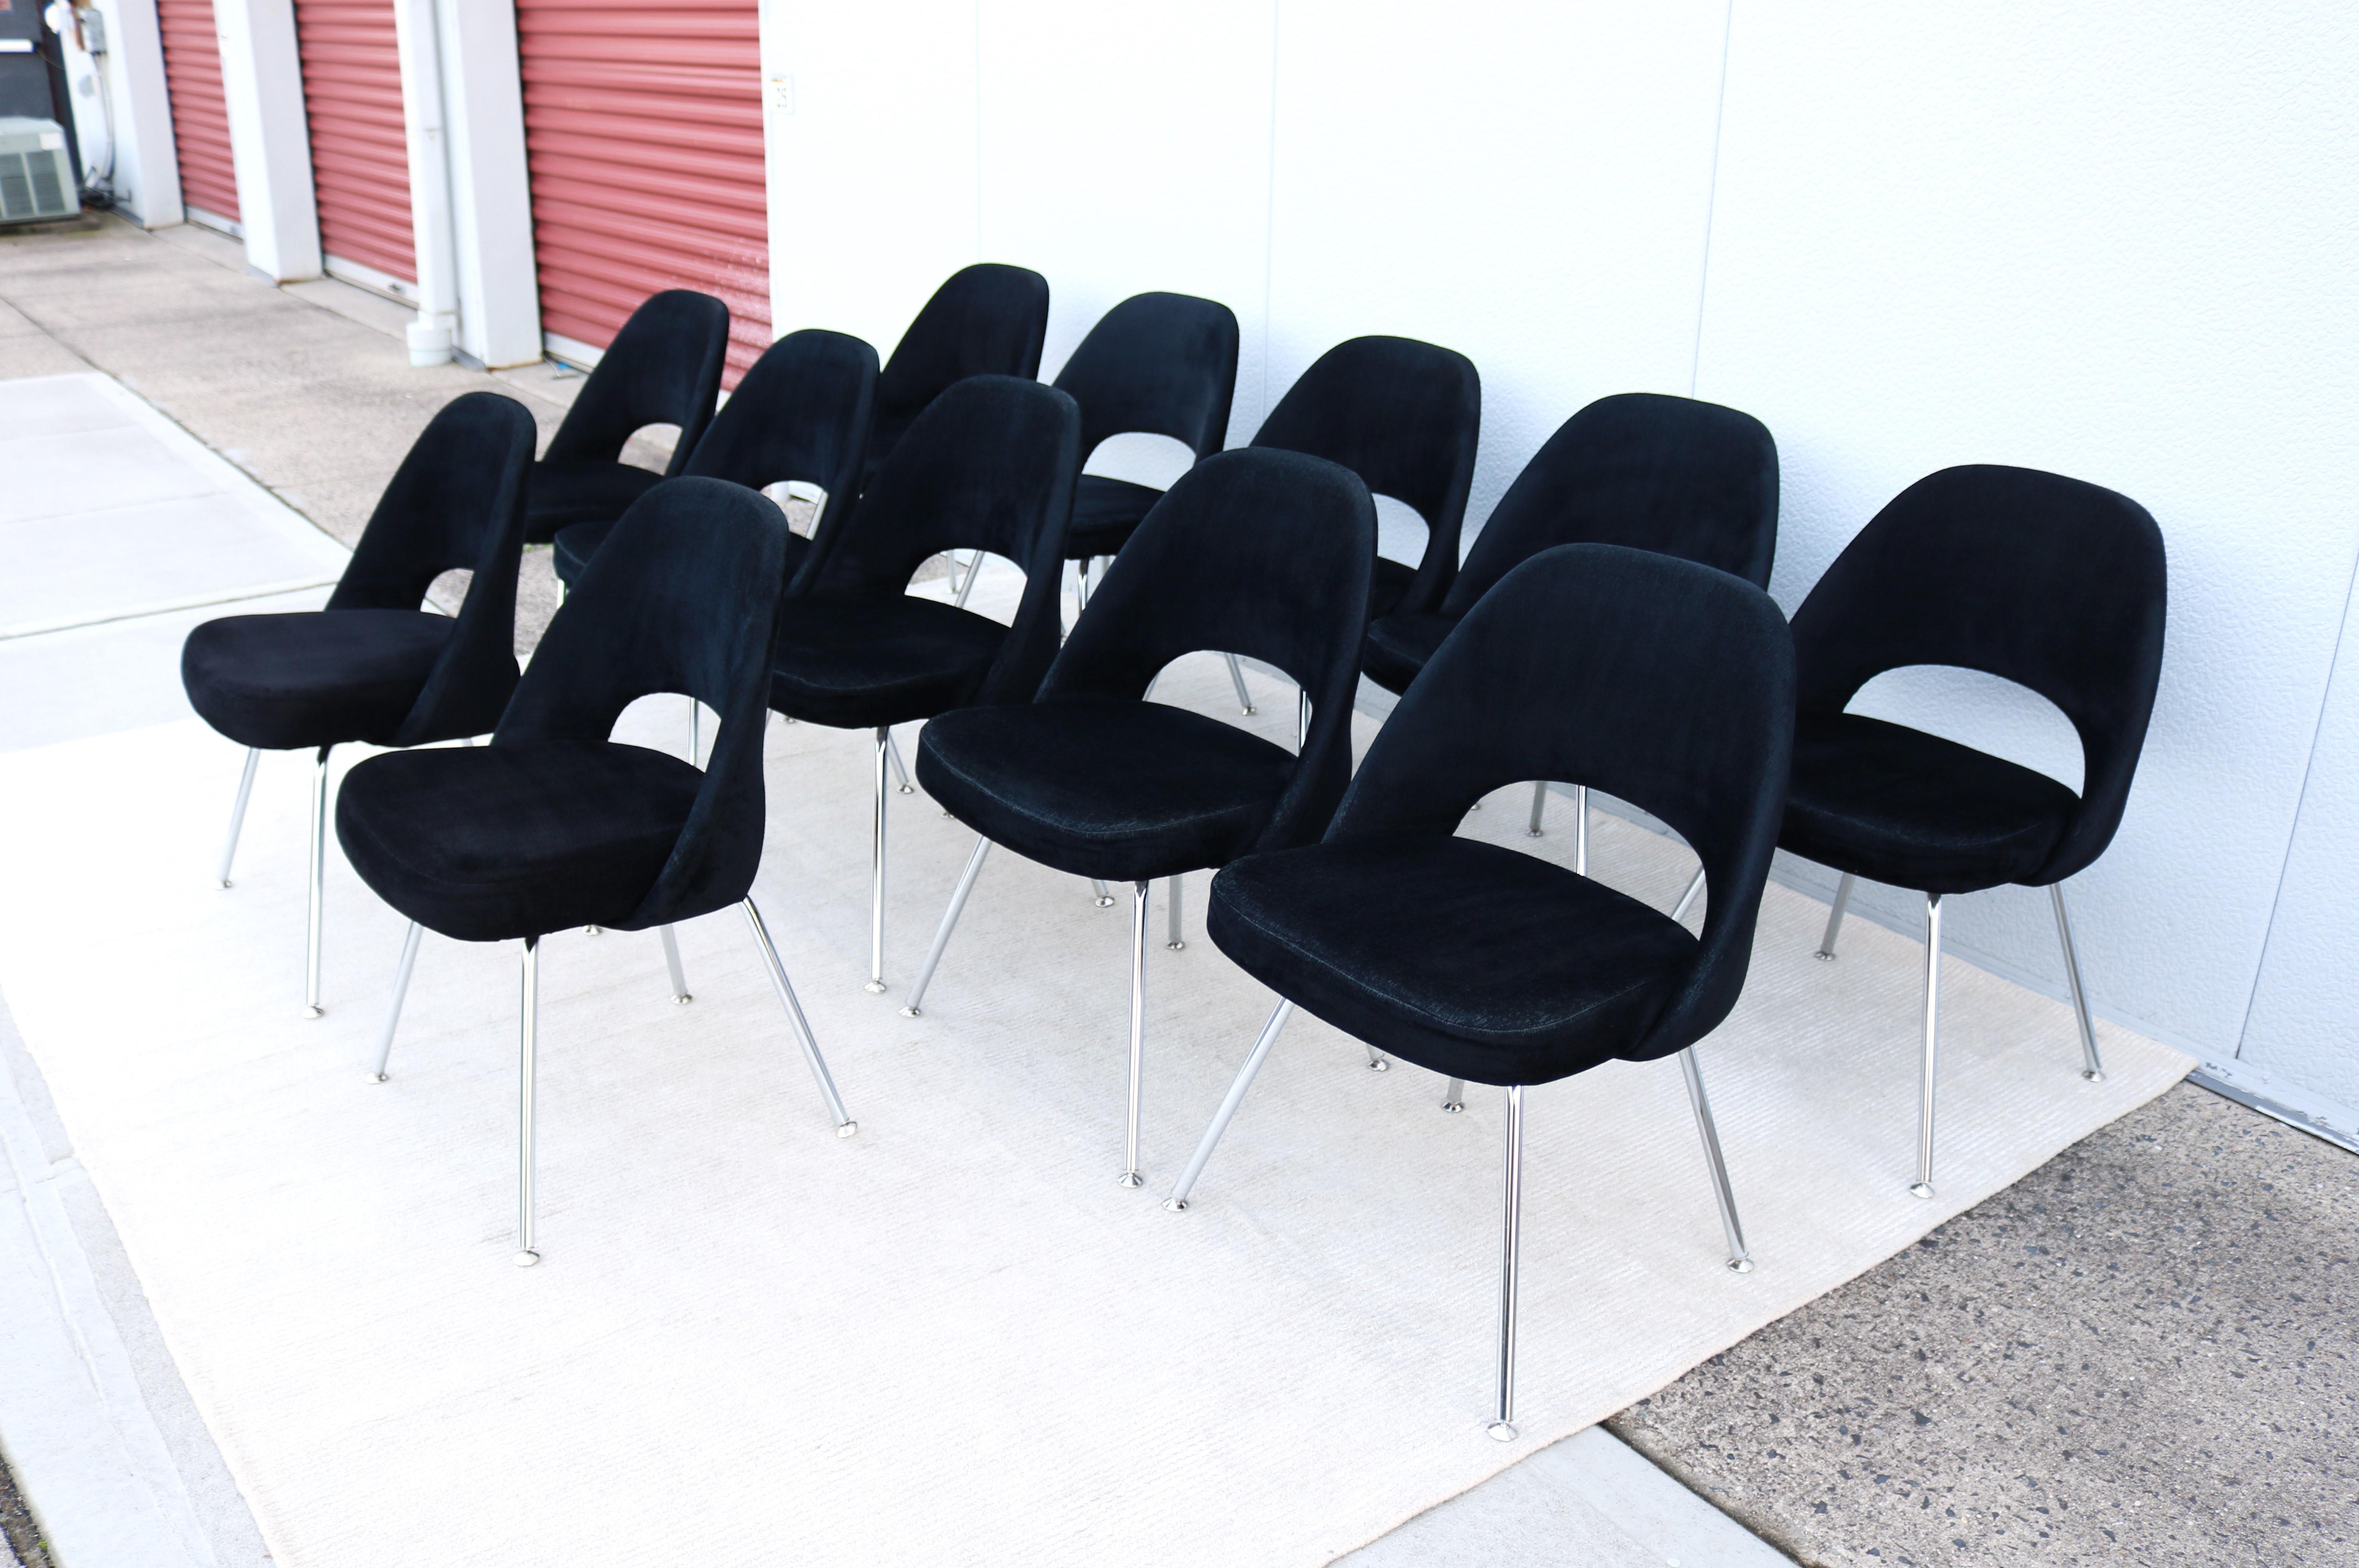 Atemberaubende authentische Mitte des Jahrhunderts modernen Satz von zwölf Saarinen Executive armless Stühle von Knoll.
Einer der beliebtesten Entwürfe von Knoll, der durch die Form seiner Schale höchsten Komfort bietet.
Er wurde 1950 eingeführt und